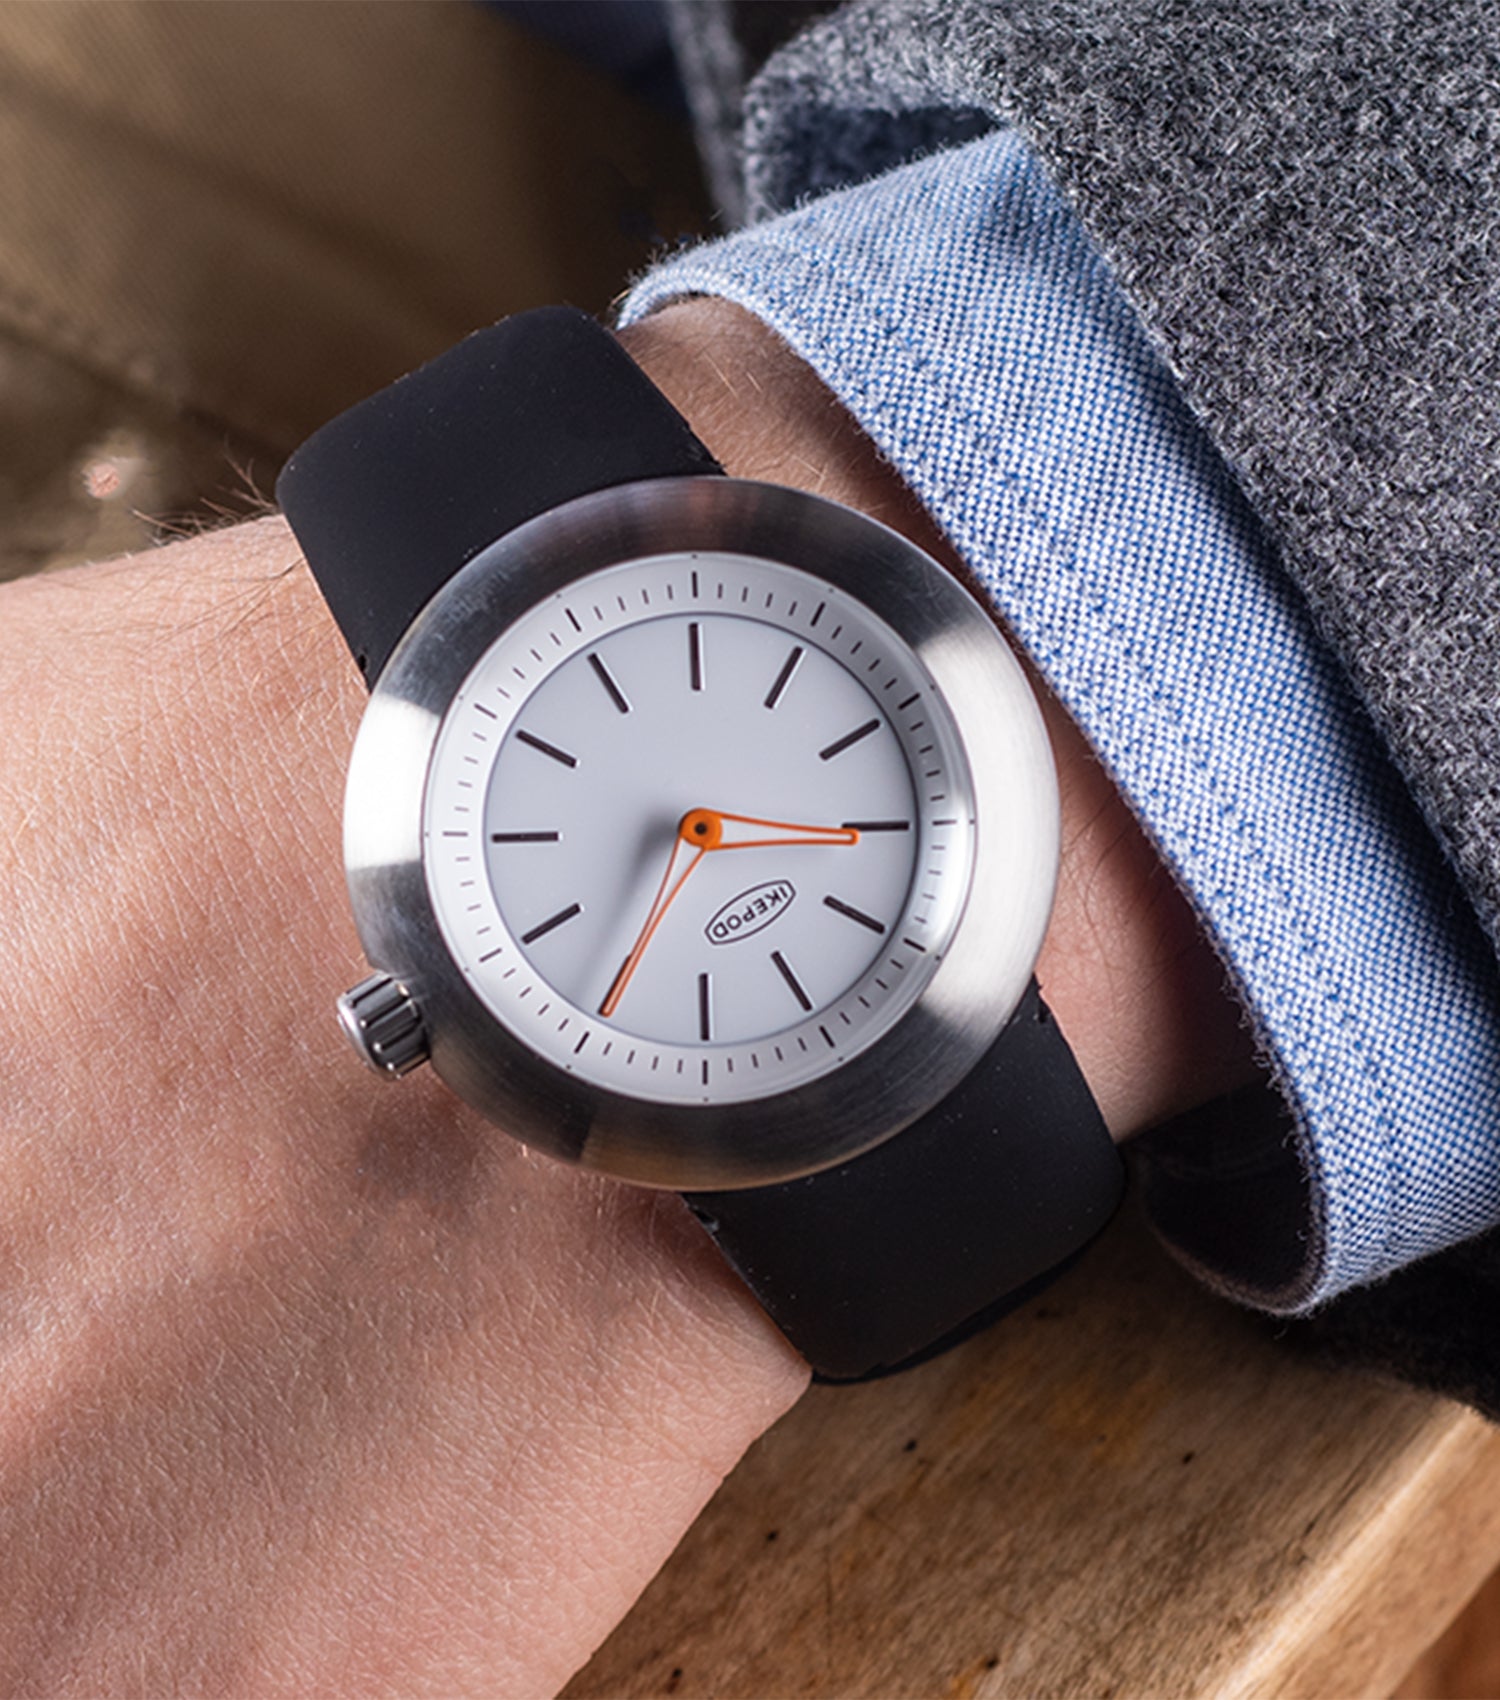 Unisex 42mm quartz design watch